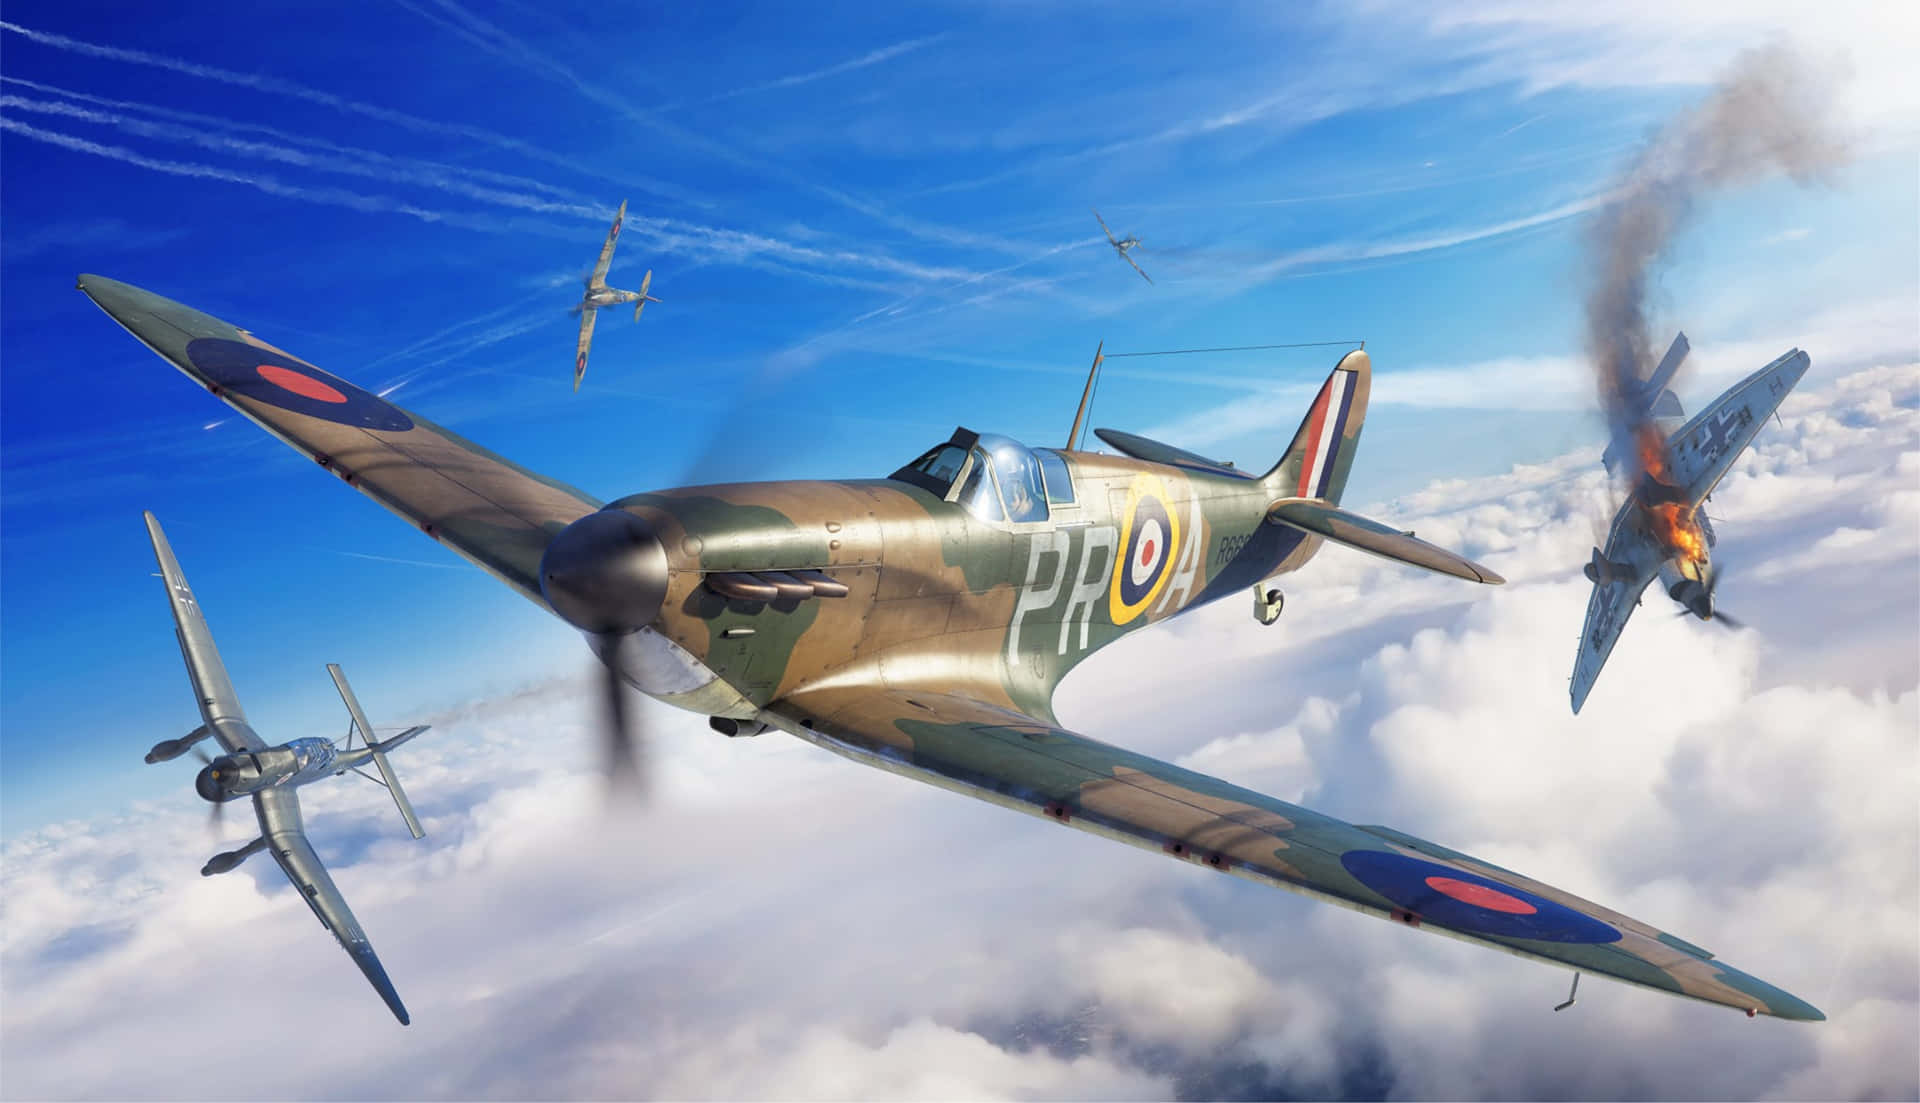 Schönesbritisches Militärflugzeug, Die Spitfire, Schwebt Durch Die Wolken. Wallpaper